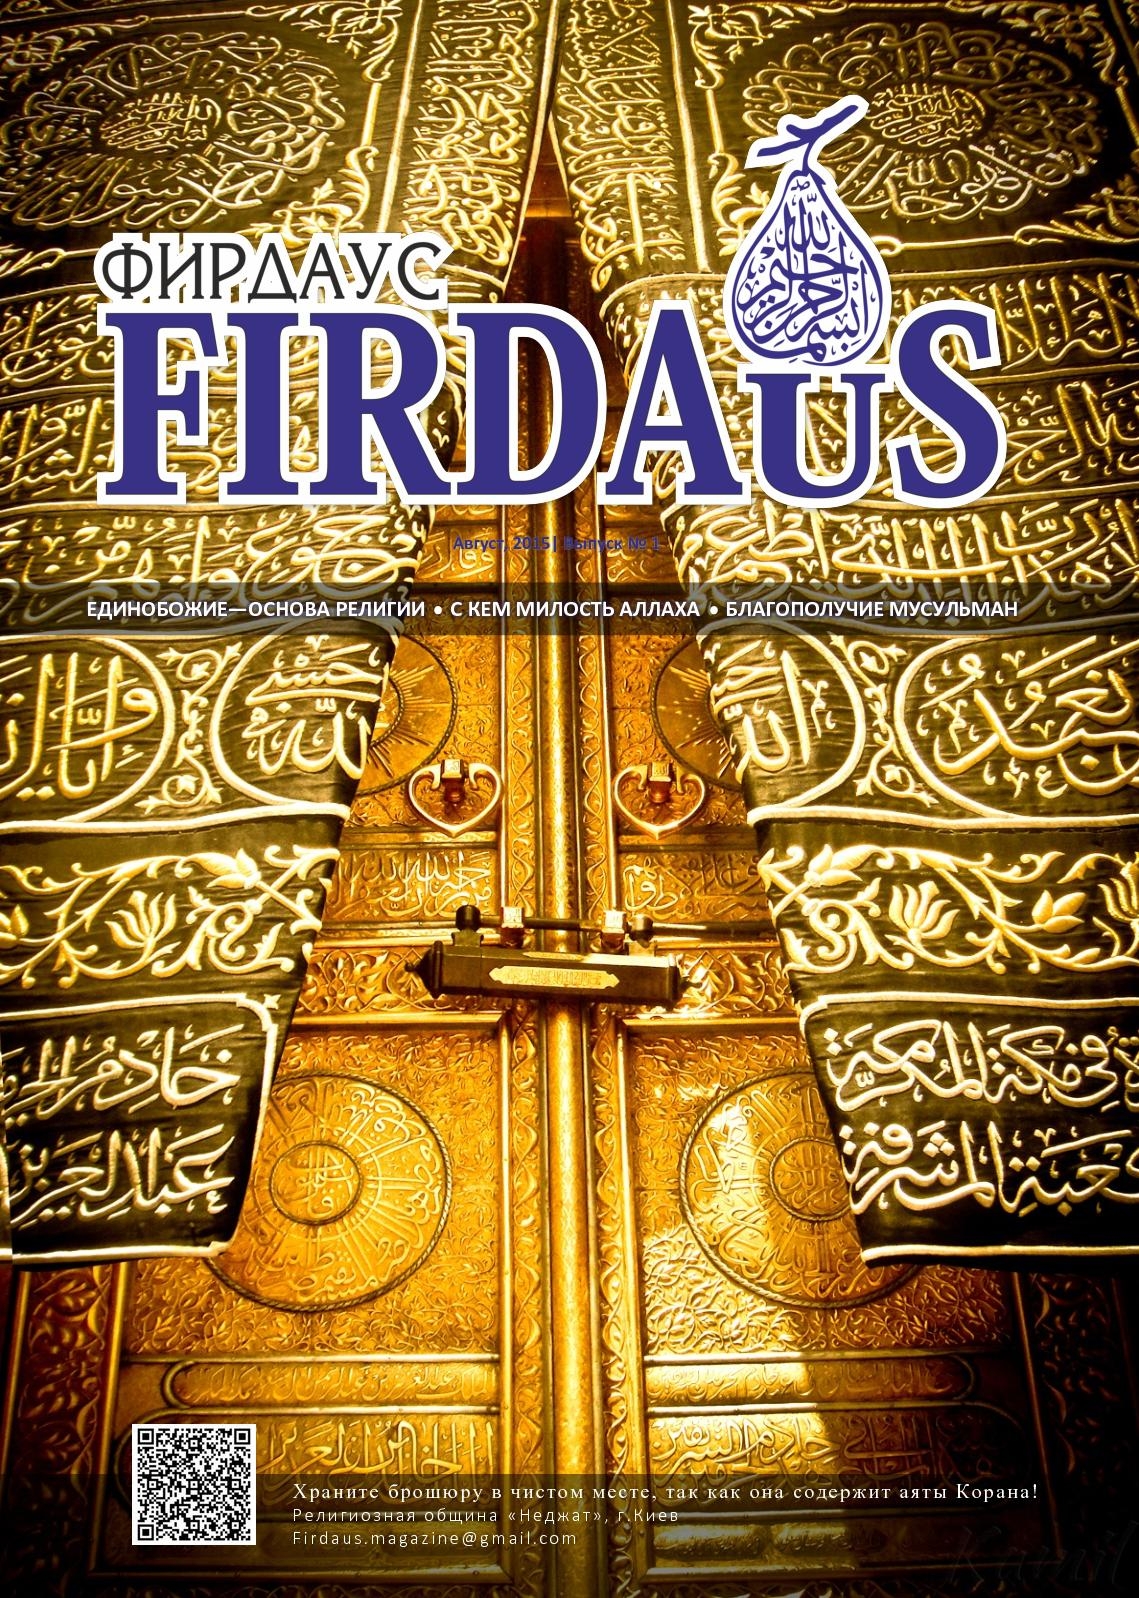 Фирдаус в исламе